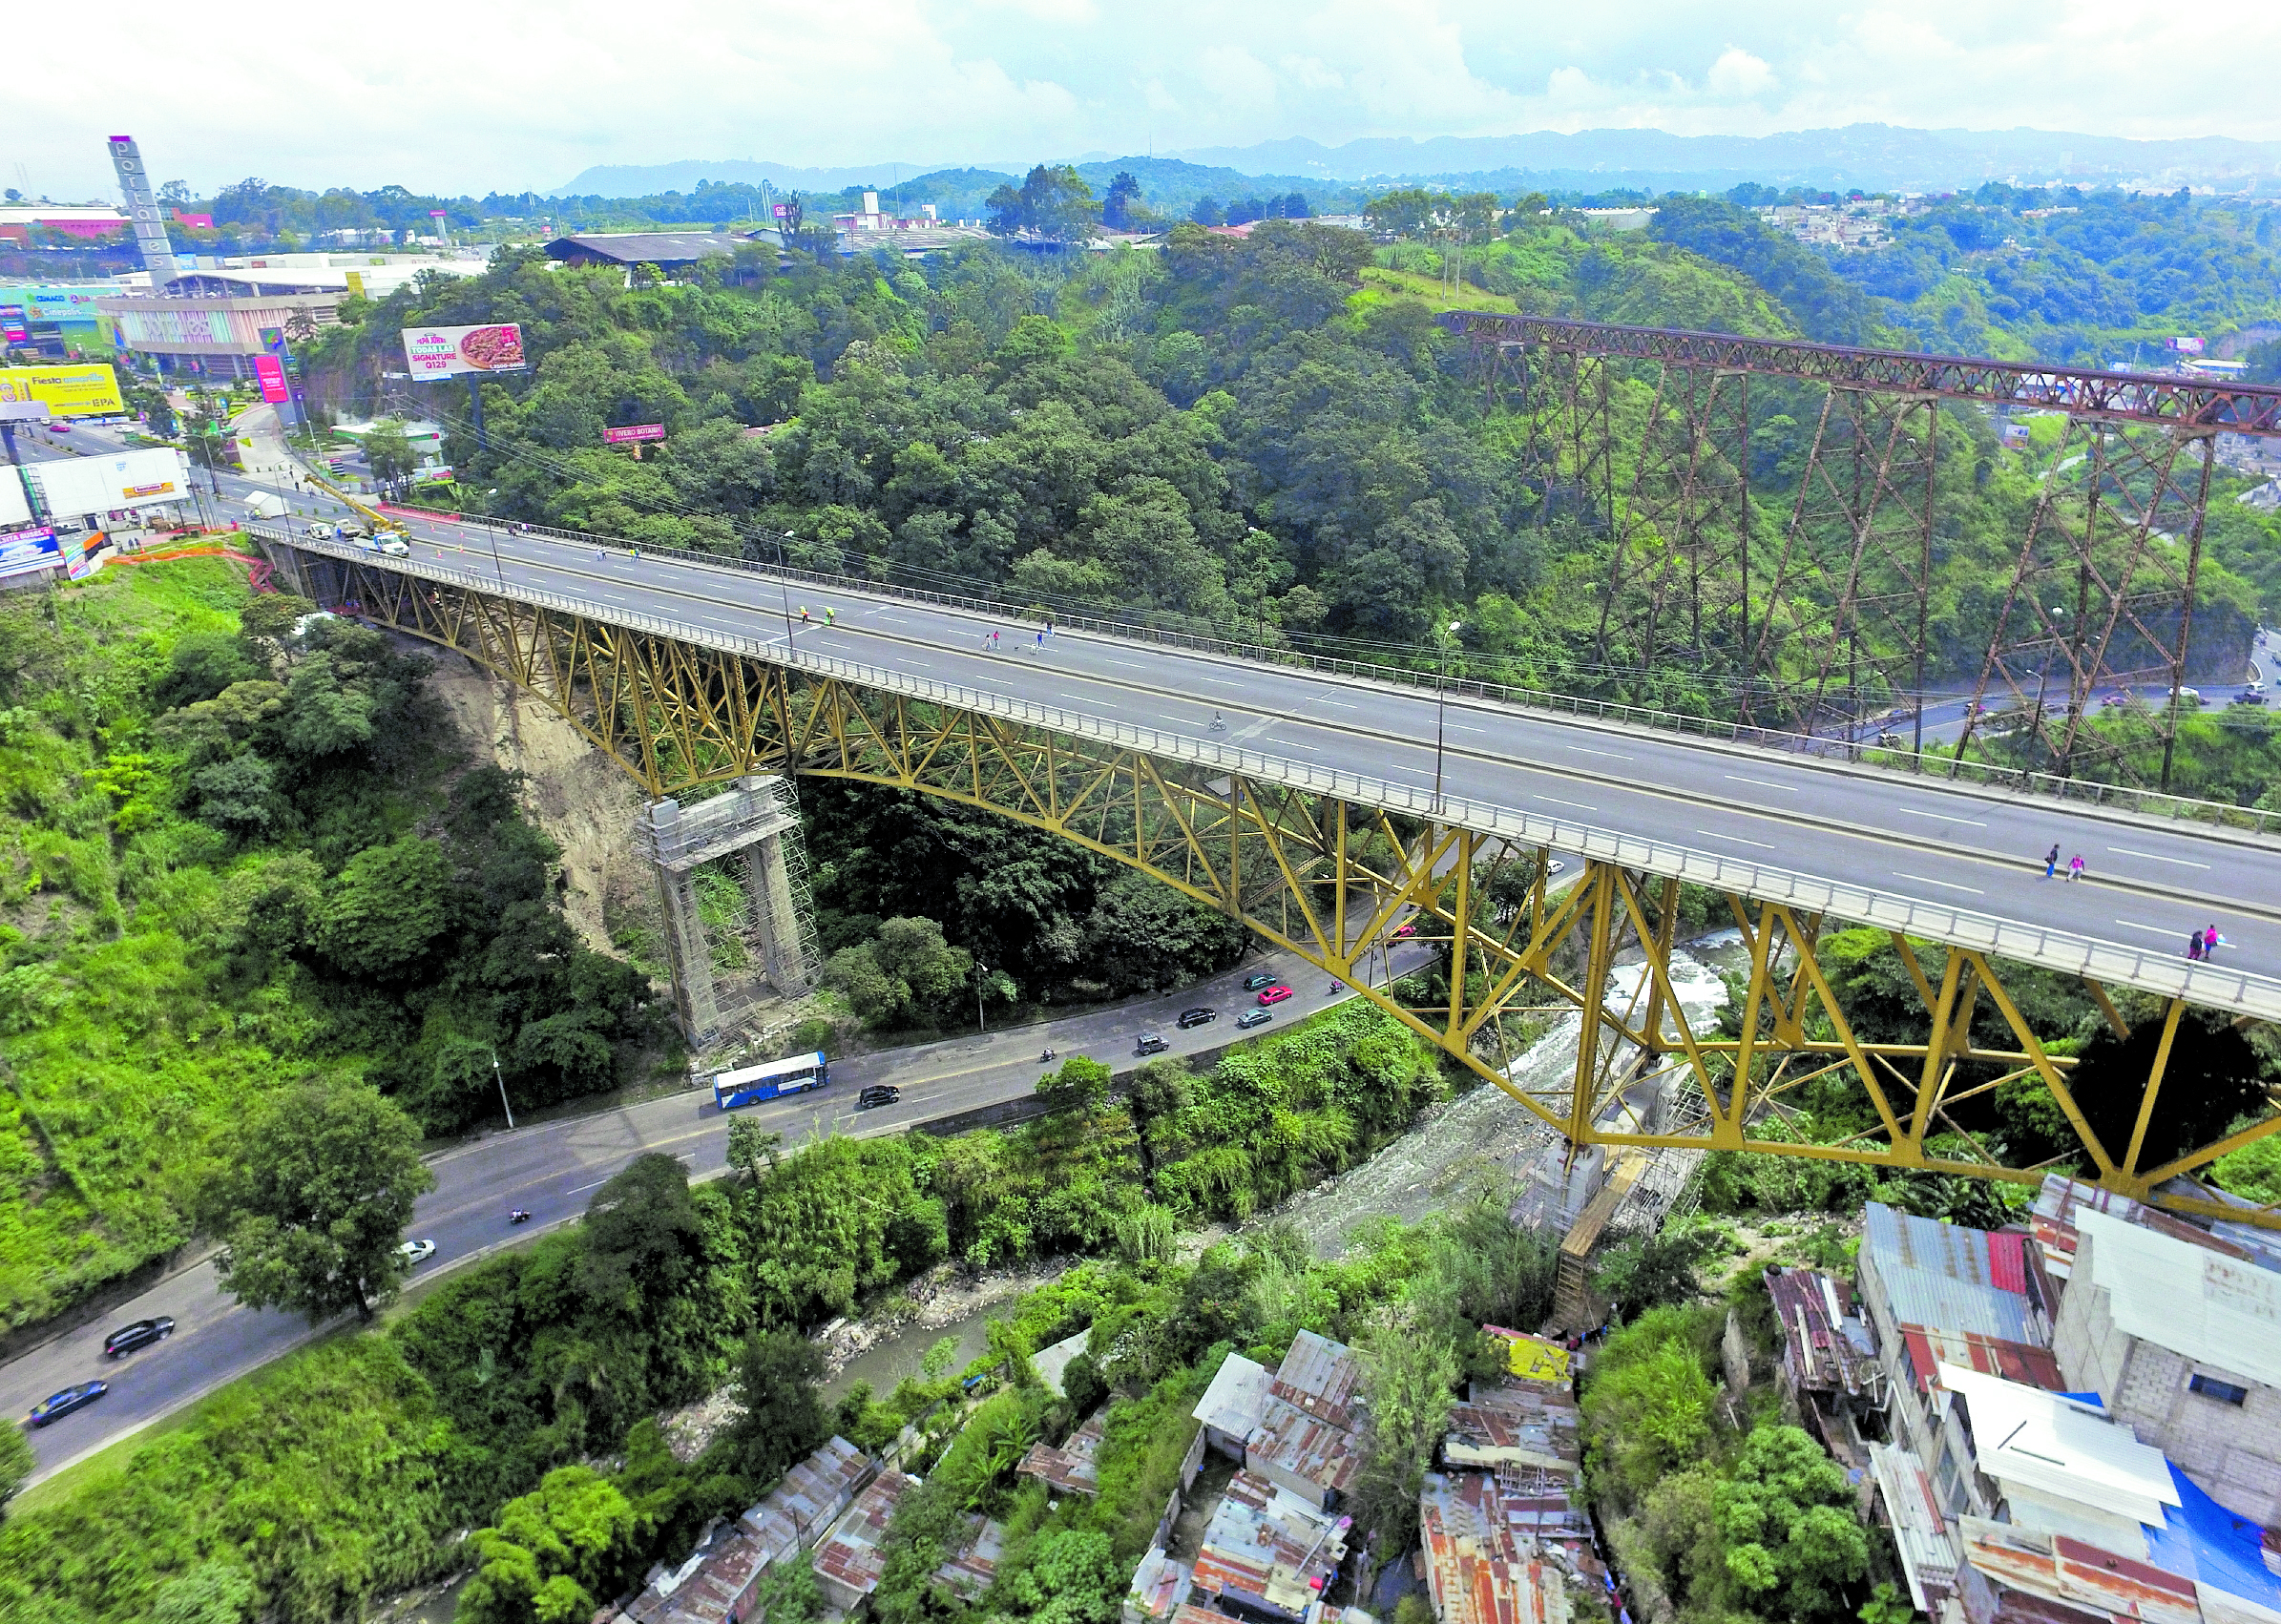 Los trabajos en el puente Belice han consistido en reforzar columnas y colocar soportes antisísmicos.(Foto Prensa Libre: Hemeroteca PL)